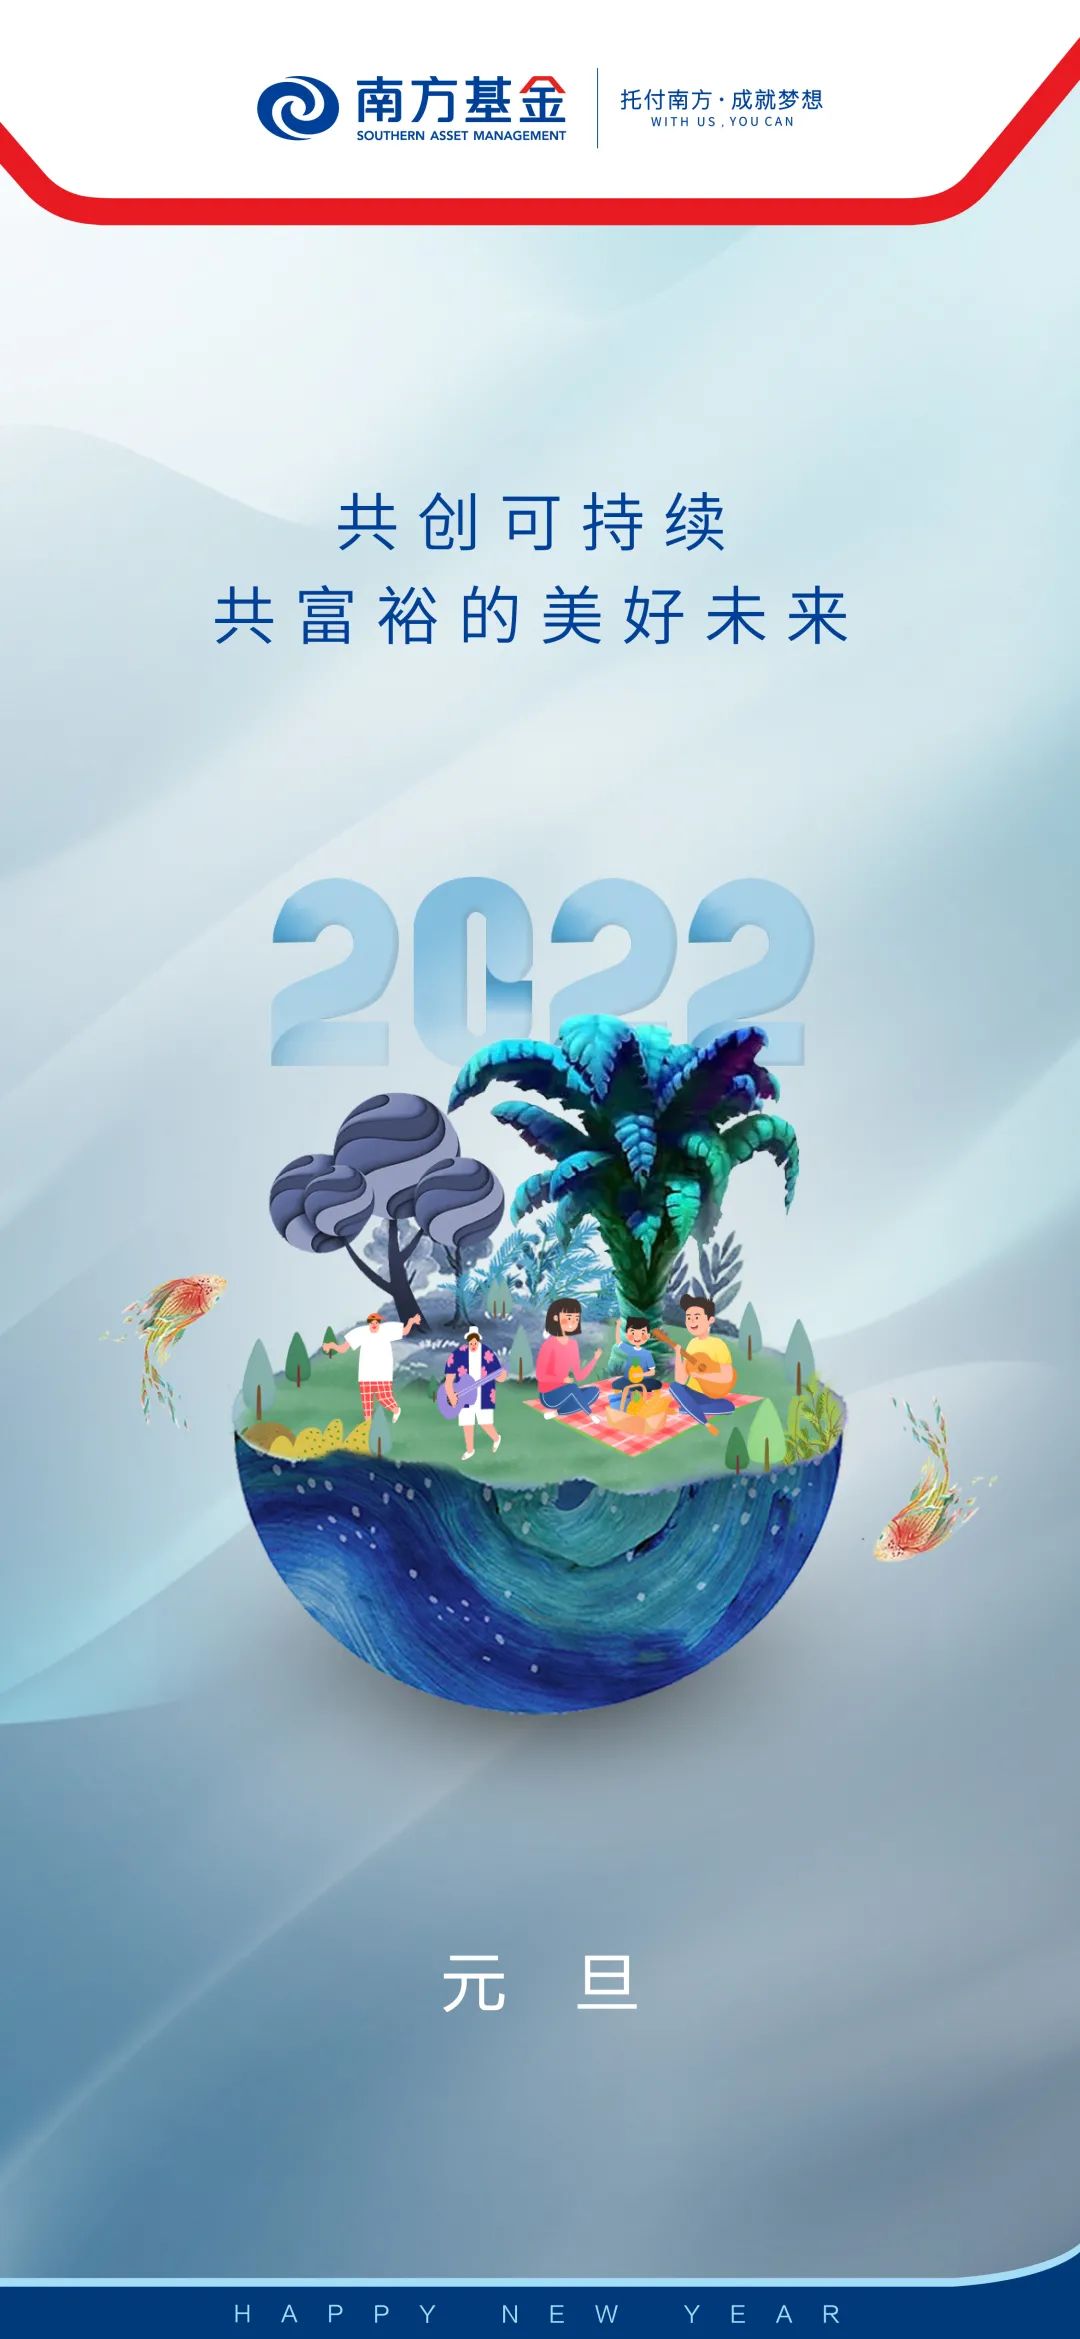 共创可持续、共富裕的美好未来丨2022年新年贺词